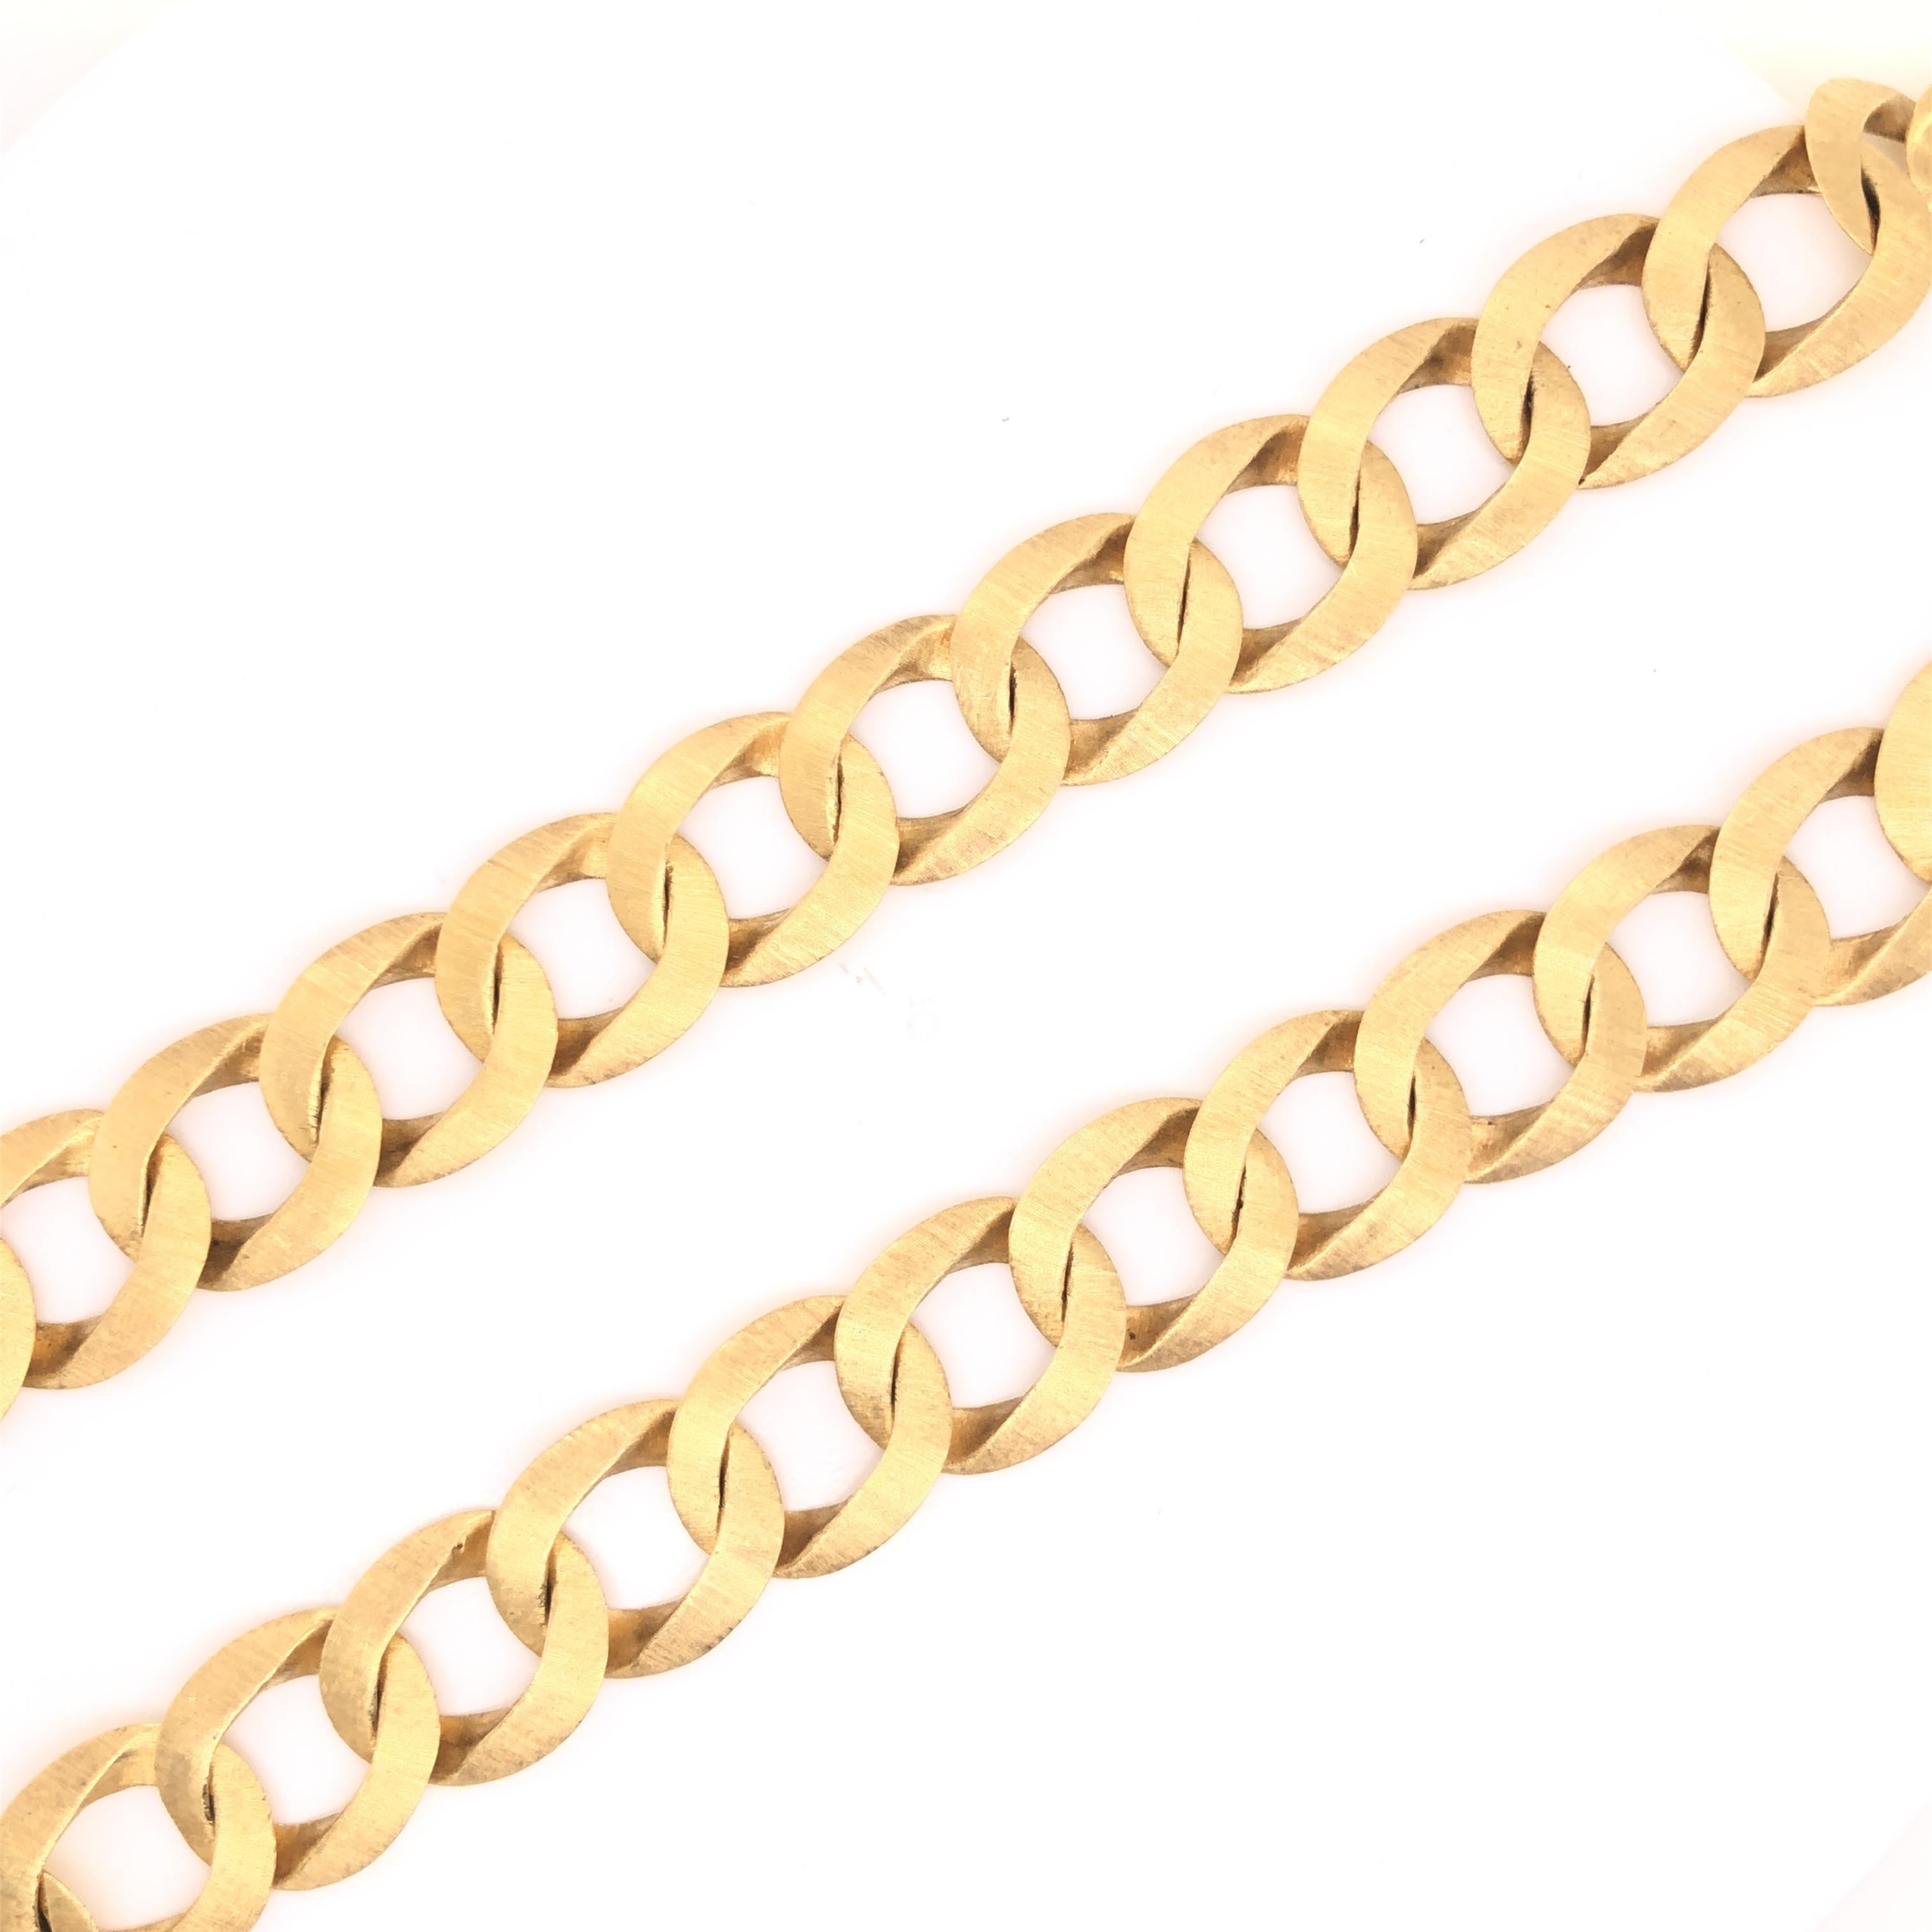 Magnifique design classique du célèbre designer Mario Buccellati. Ce collier vintage n'a jamais été autant à la mode qu'aujourd'hui. Le collier est réalisé en or jaune 18 carats et présente une finition satinée sur la partie avant du modèle.  Le